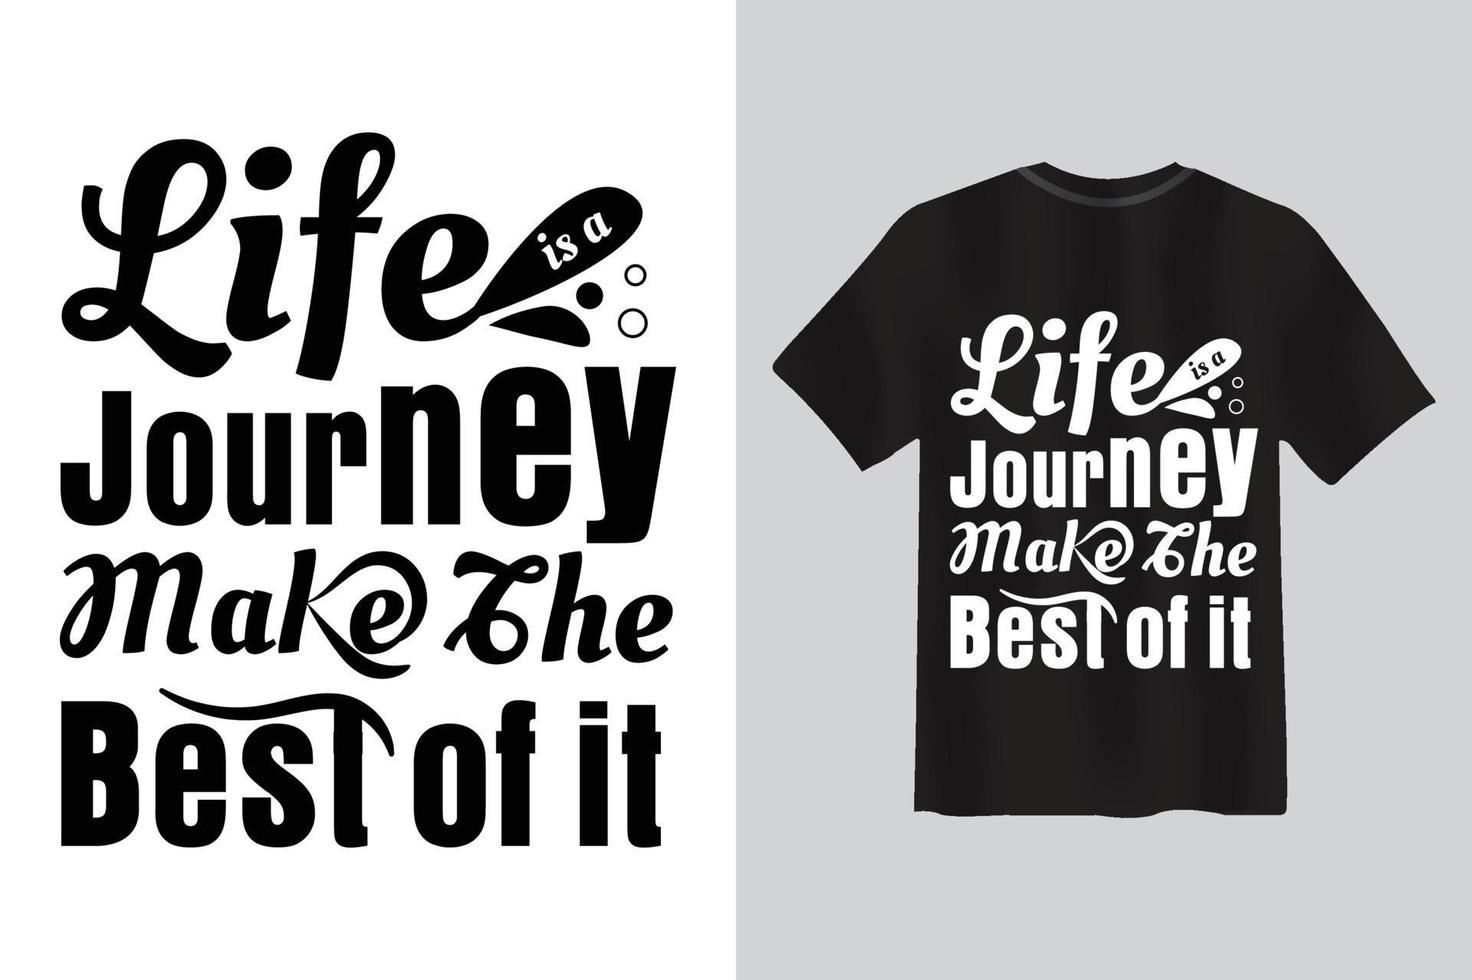 la vita è un viaggio, sfrutta al meglio il design della maglietta con citazione di tipografia. vettore